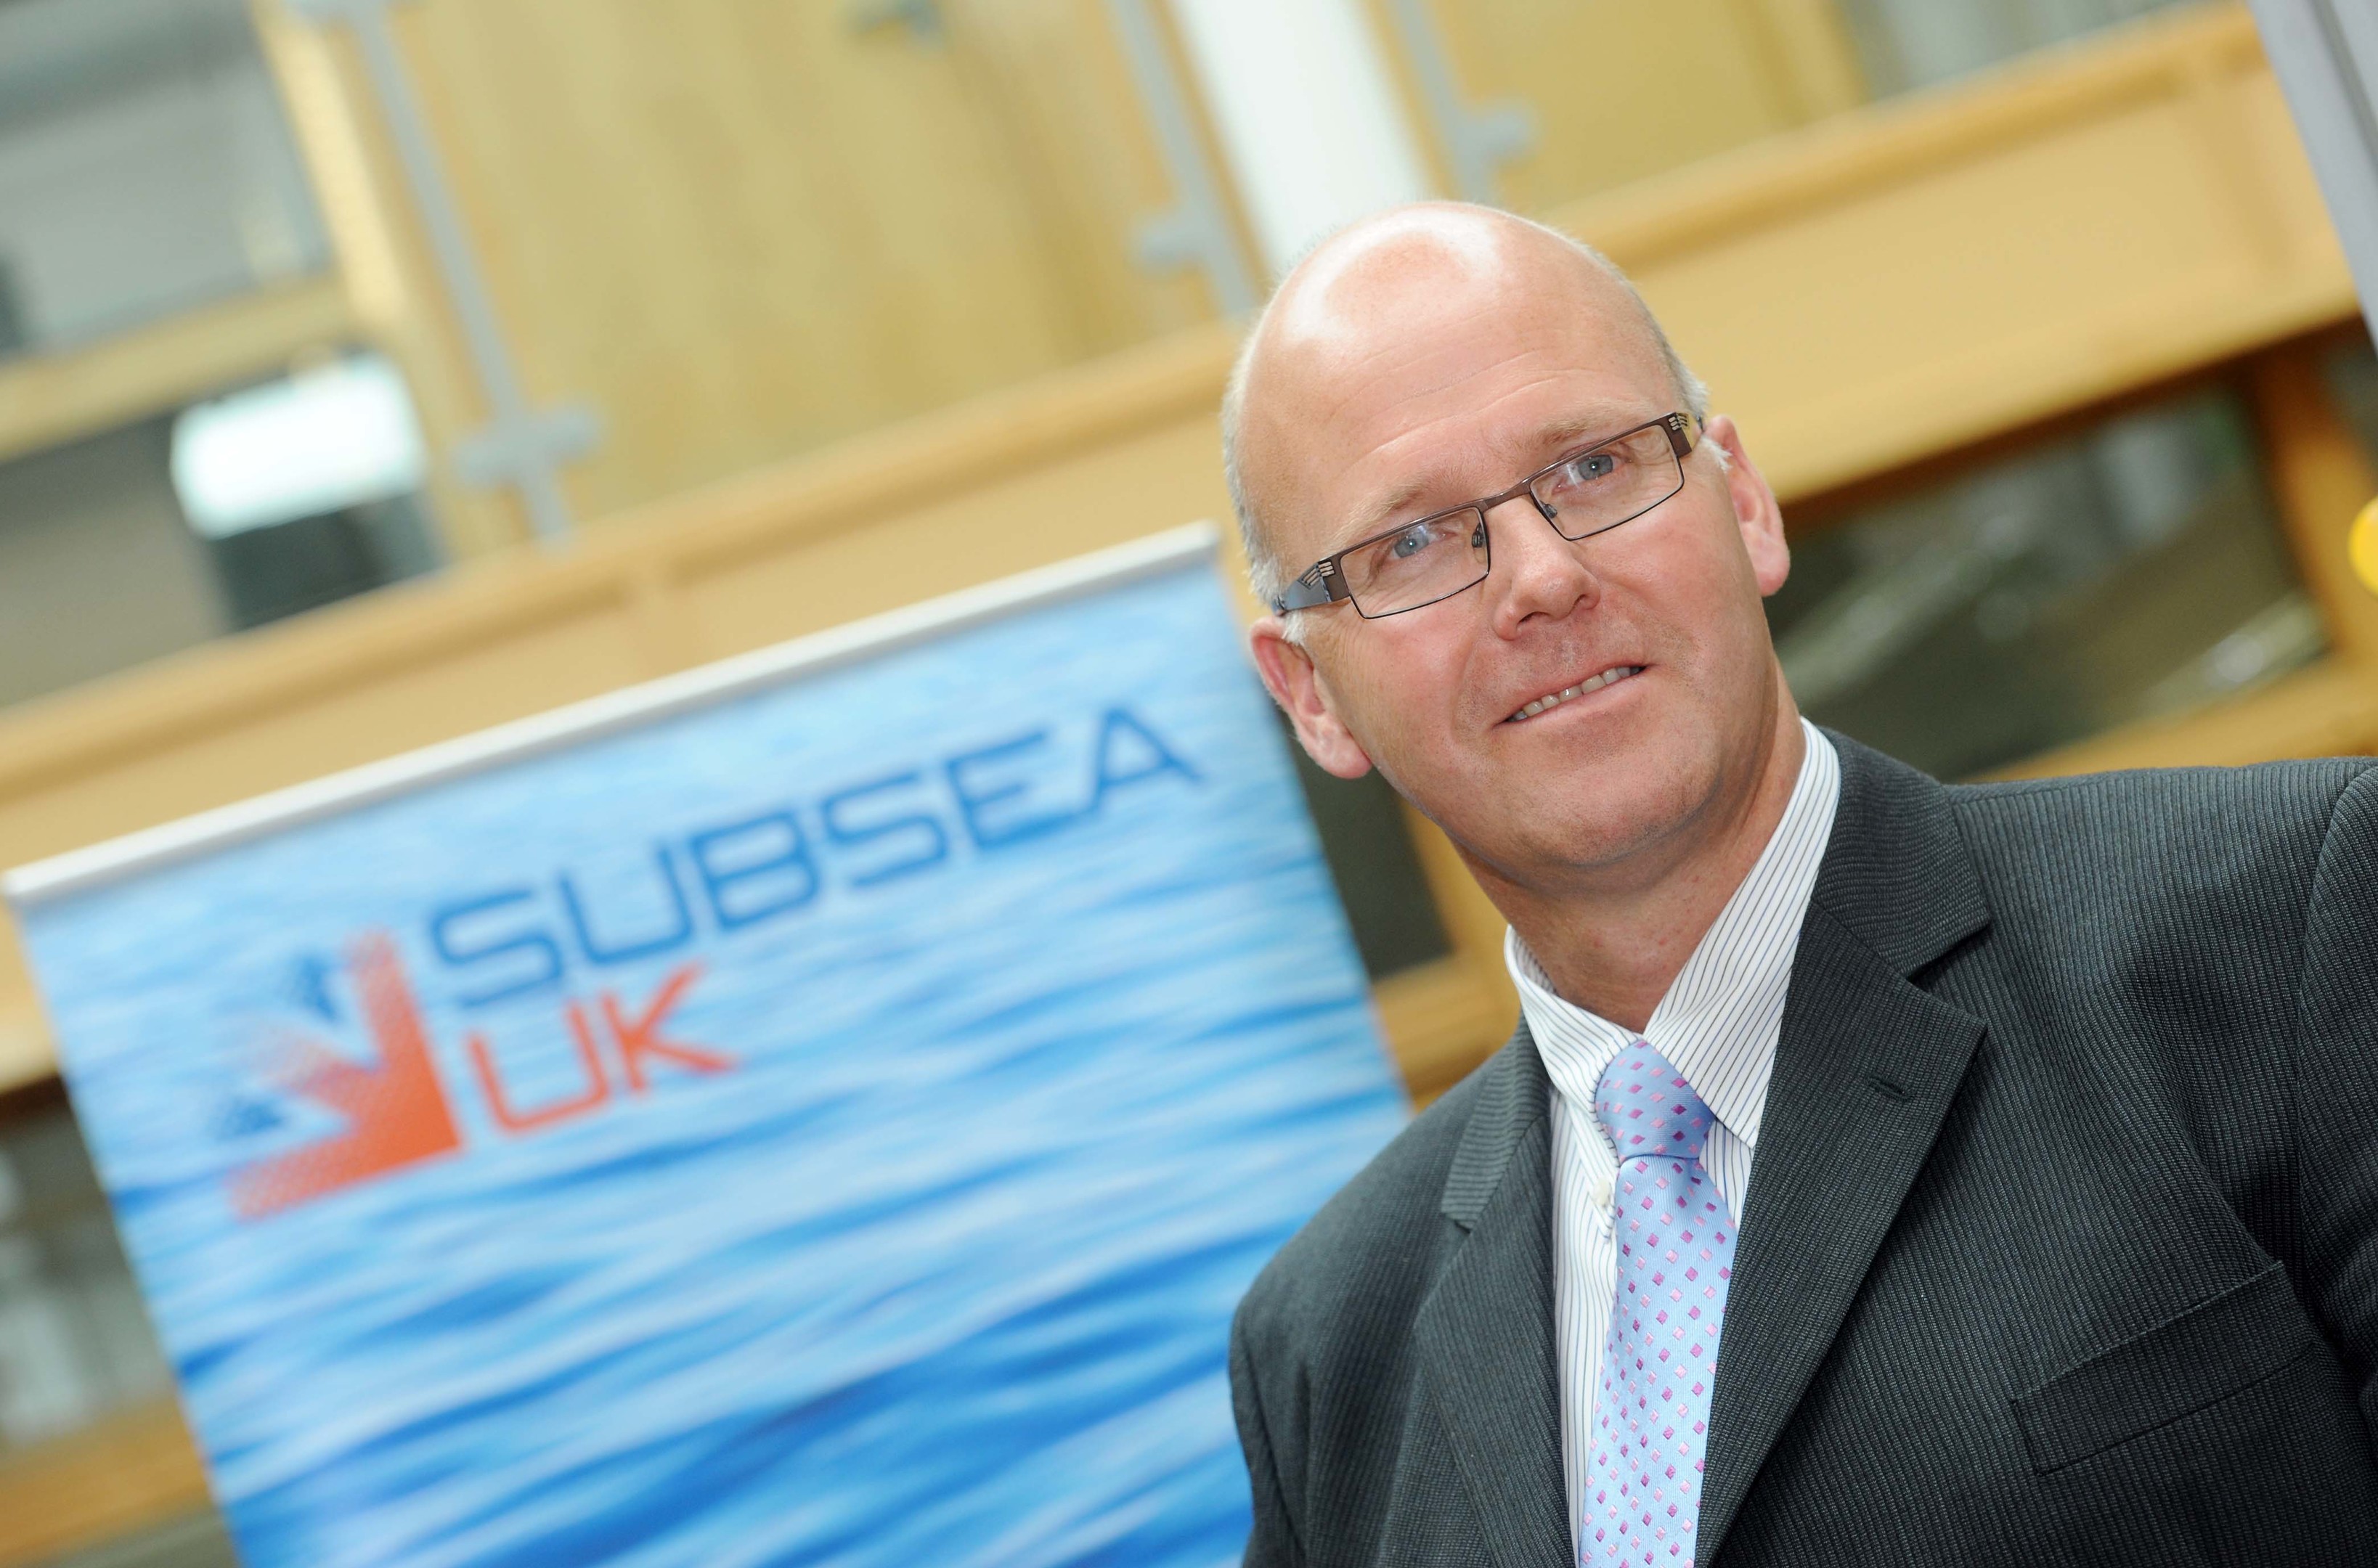 Neil Gordon, chief executive, Subsea UK